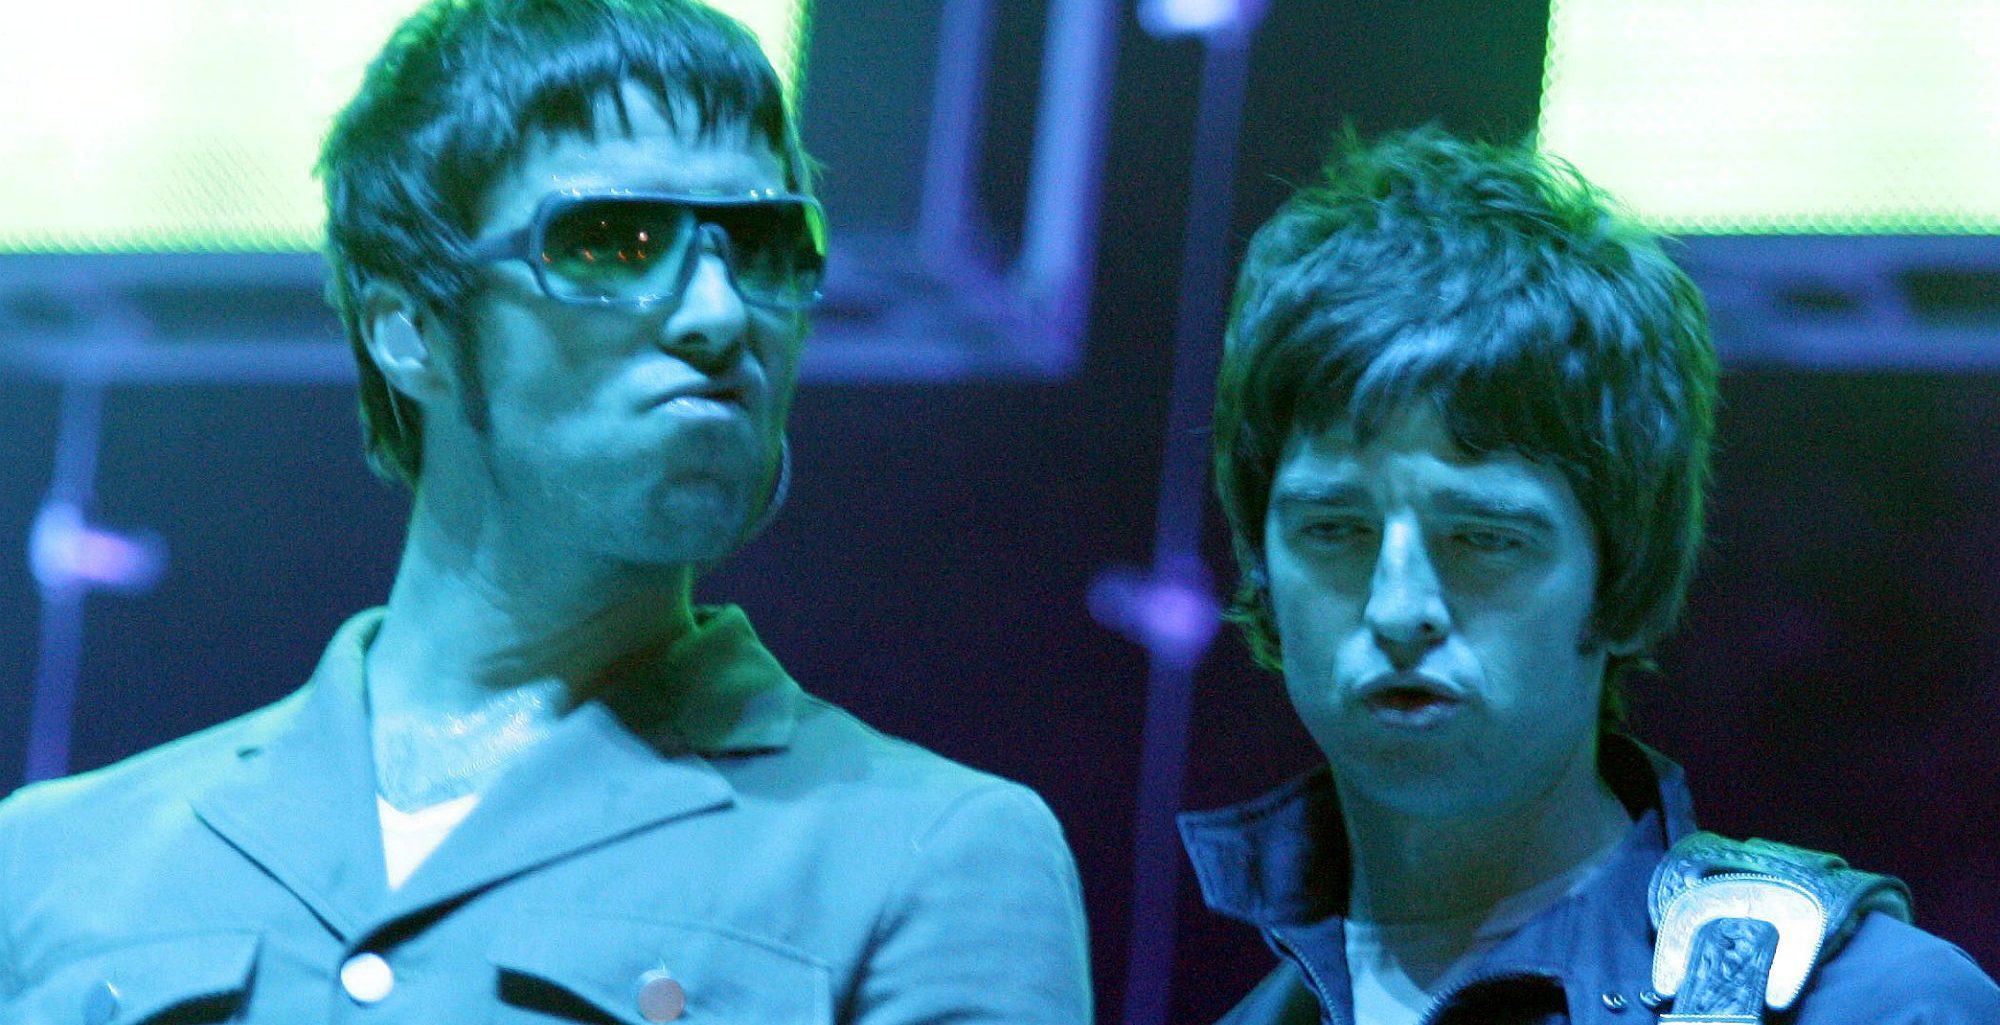 PEOR QUE NUNCA: Noel Gallagher explotó y le negó a Liam los derechos de Oasis por “Misógino y sexista”